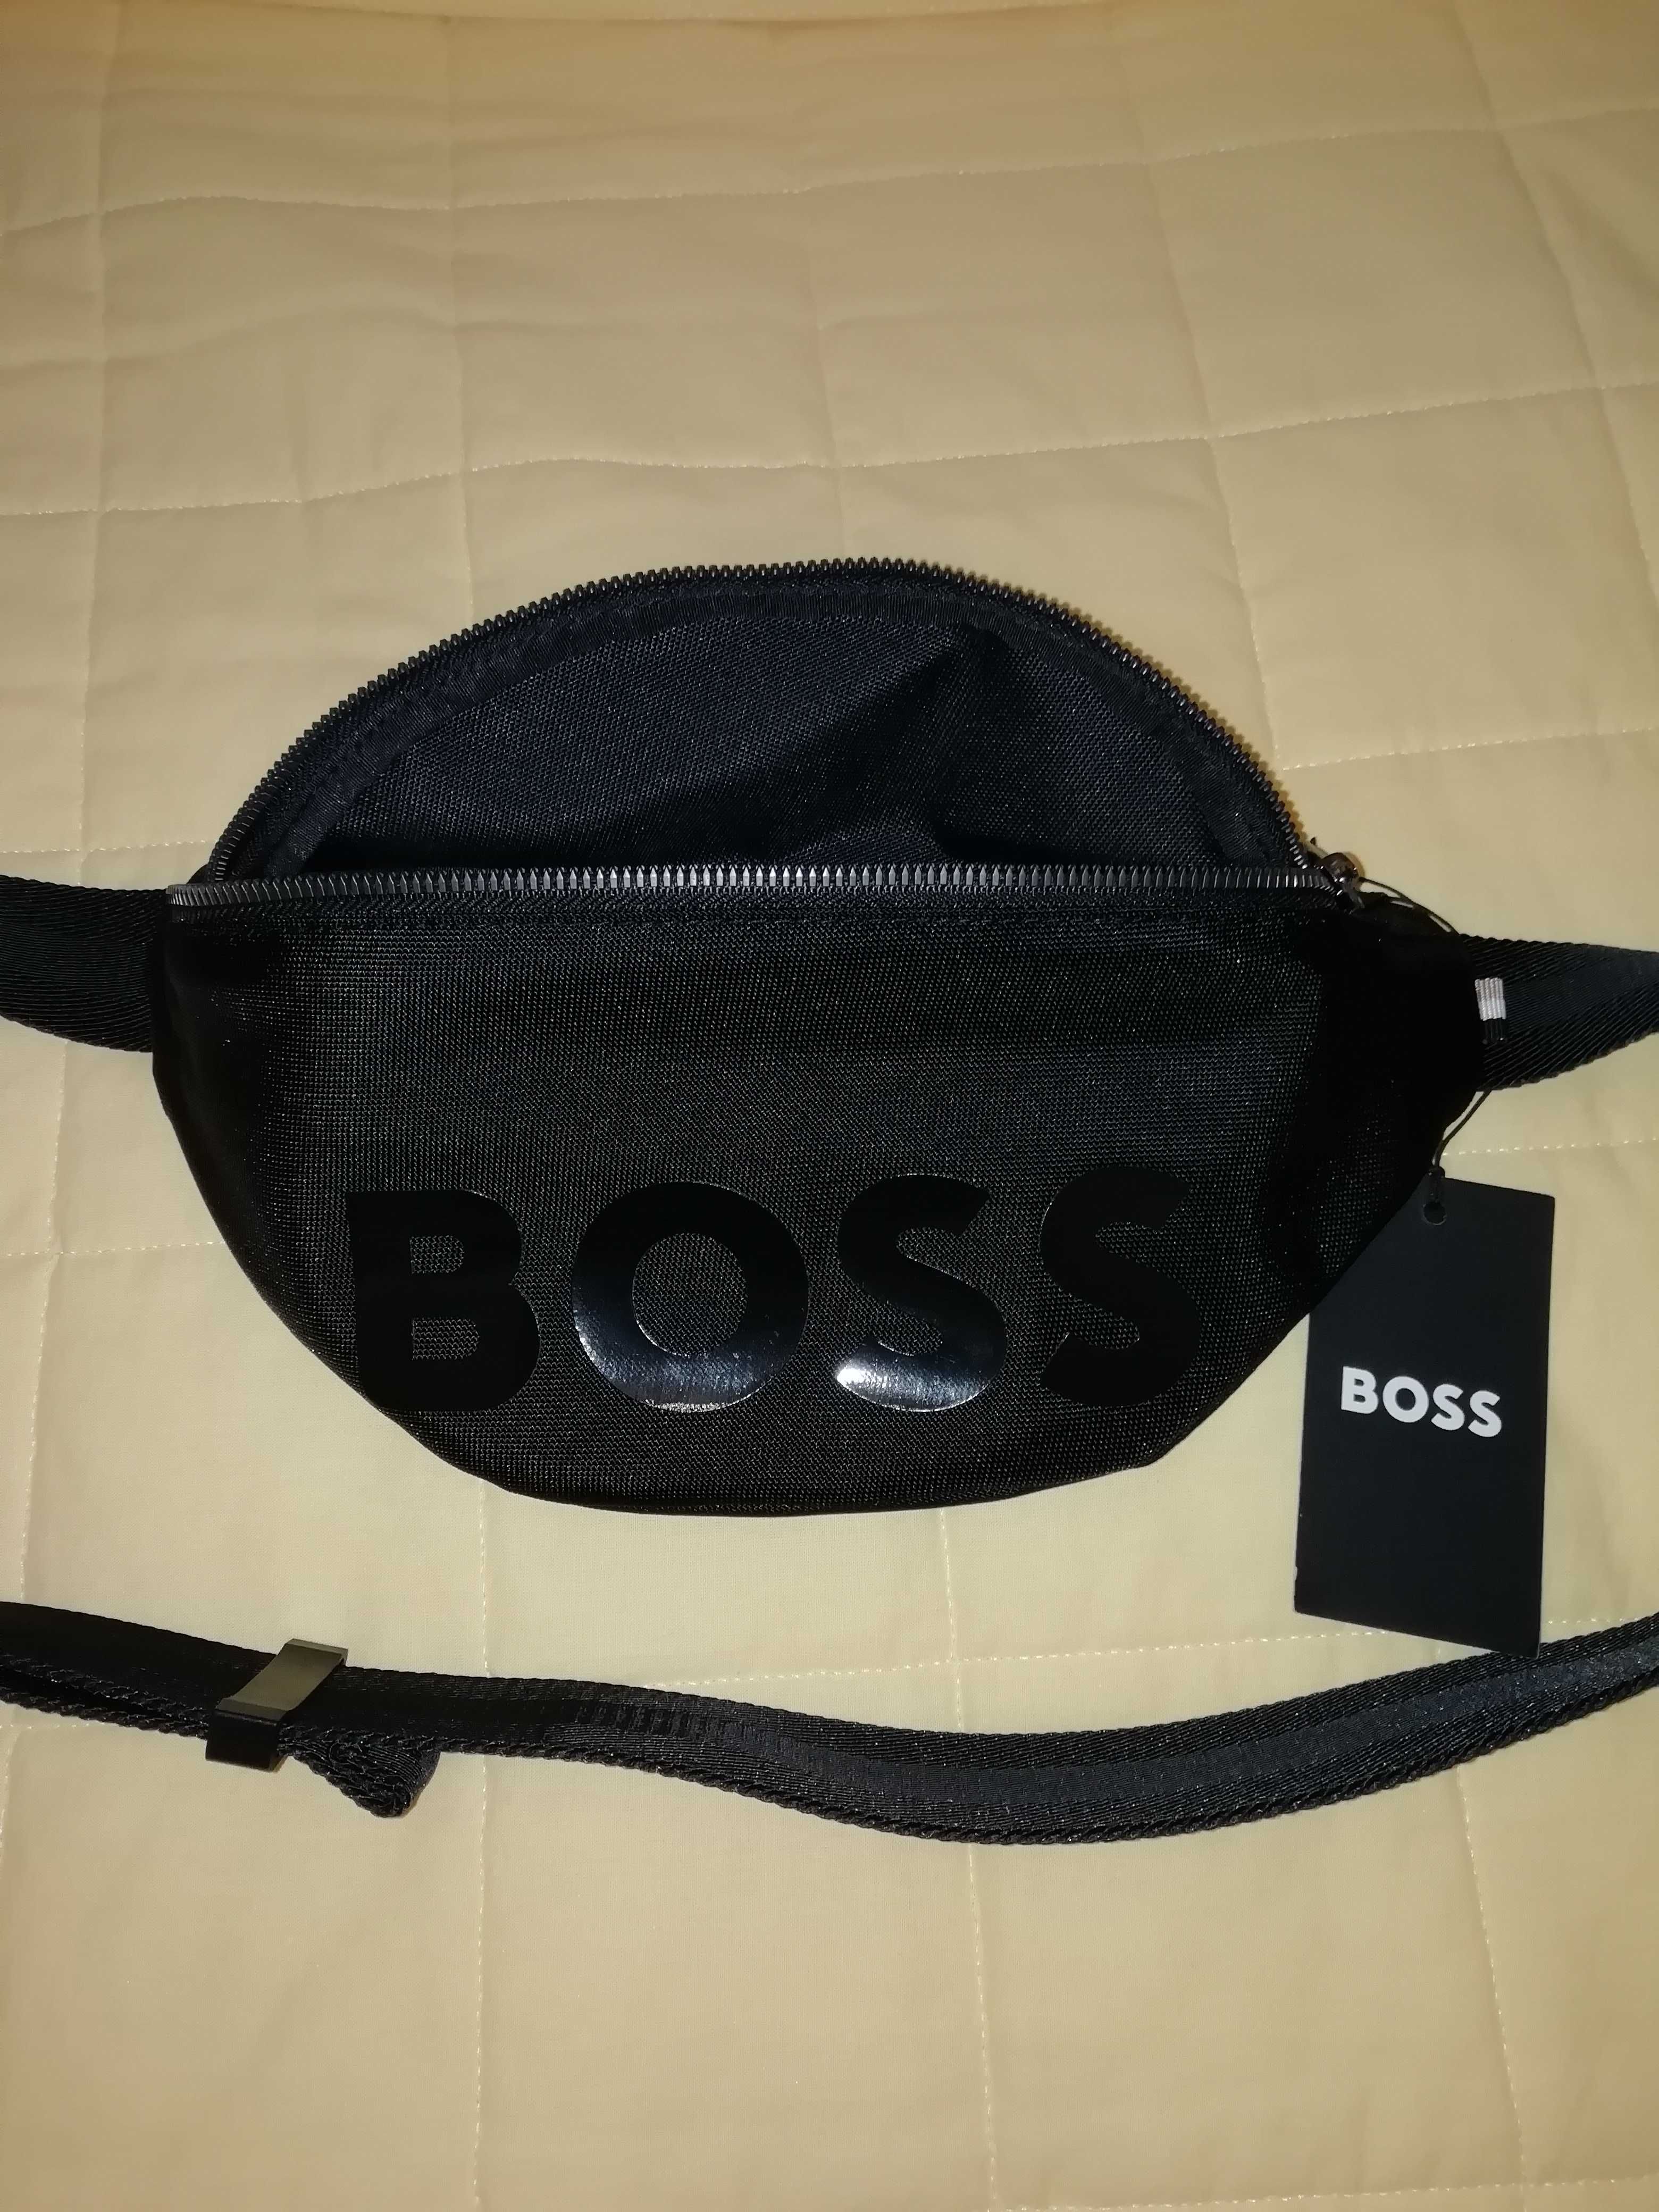 Bolsa/Mala Cintura Hugo Boss Original Nova com Etiqueta Custou 99€